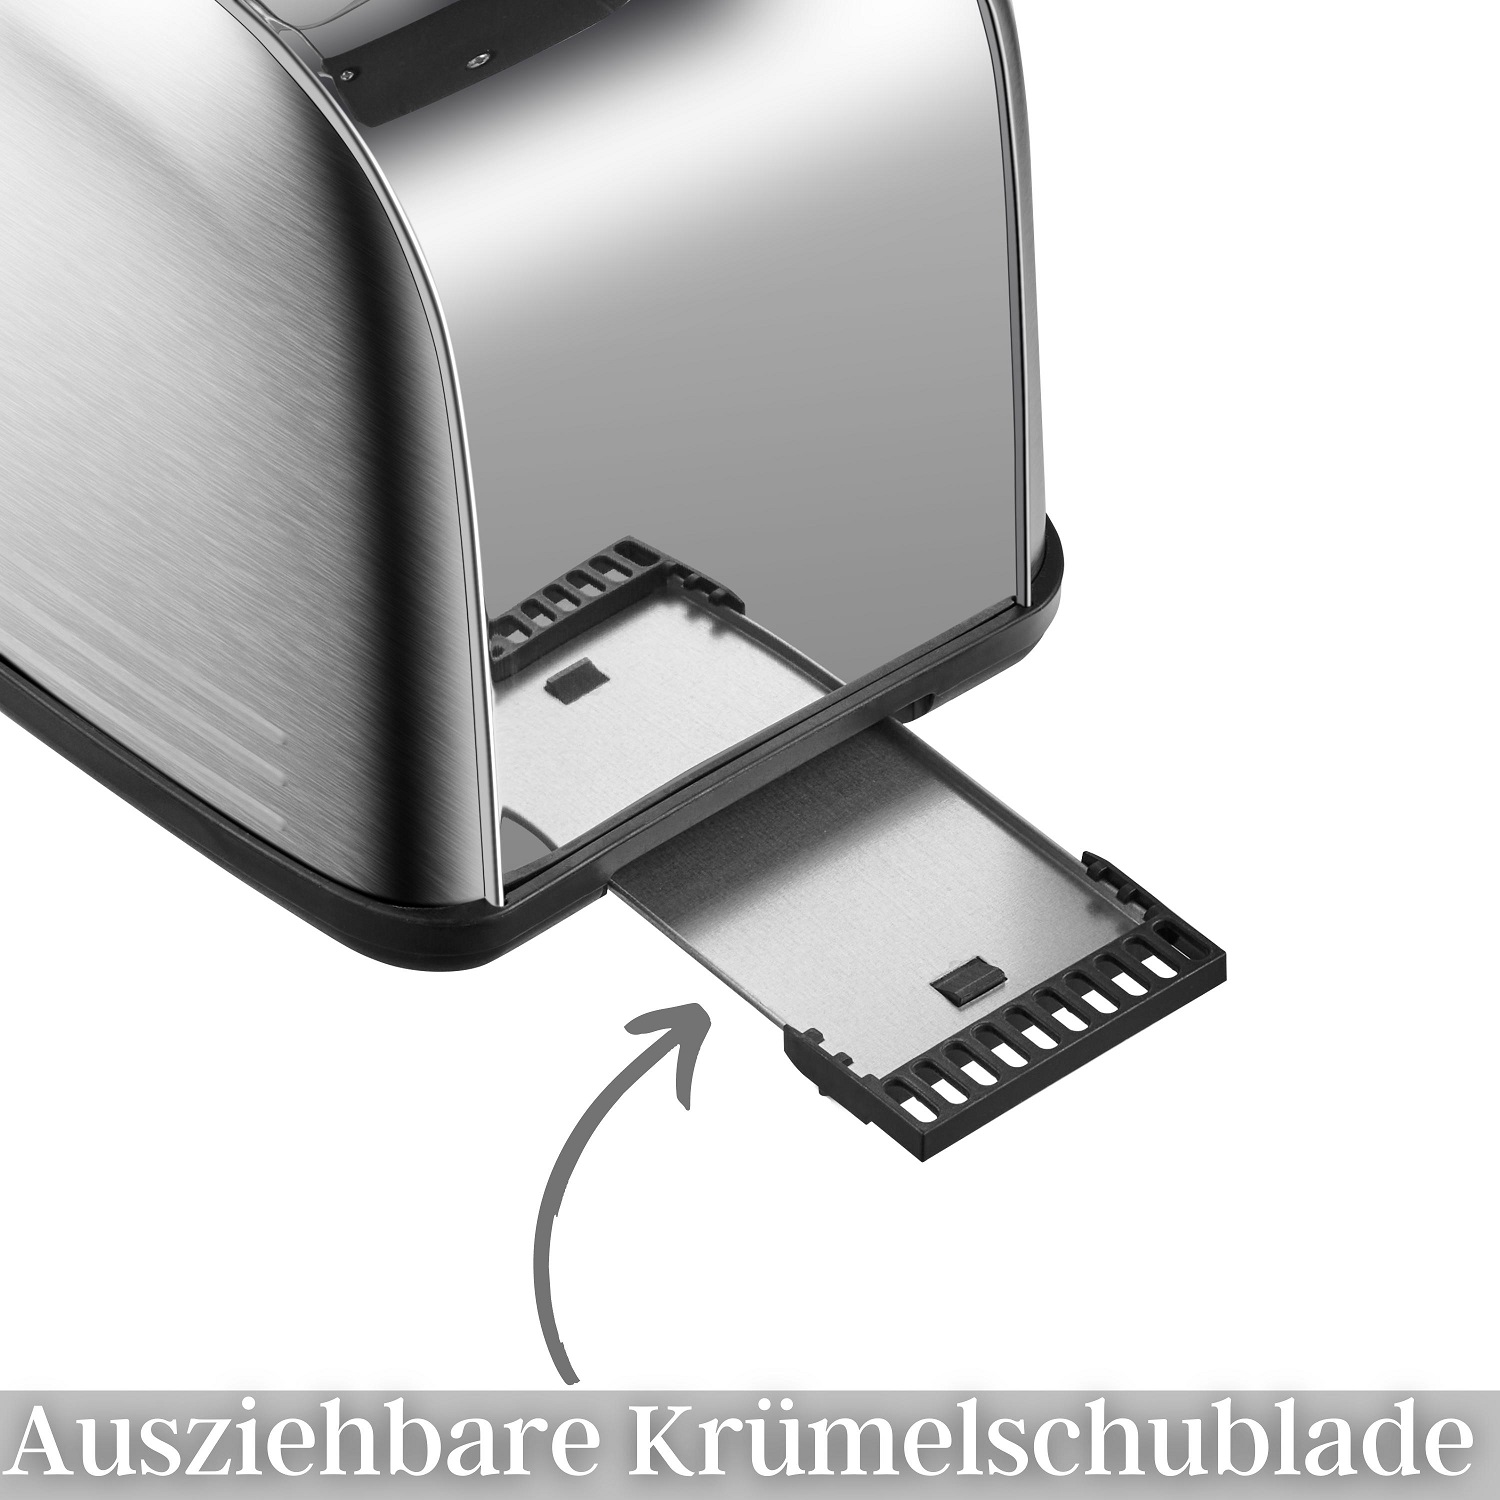 Steinborg 2 Scheiben Edelstahl Toaster | Mit Brötchenaufsatz